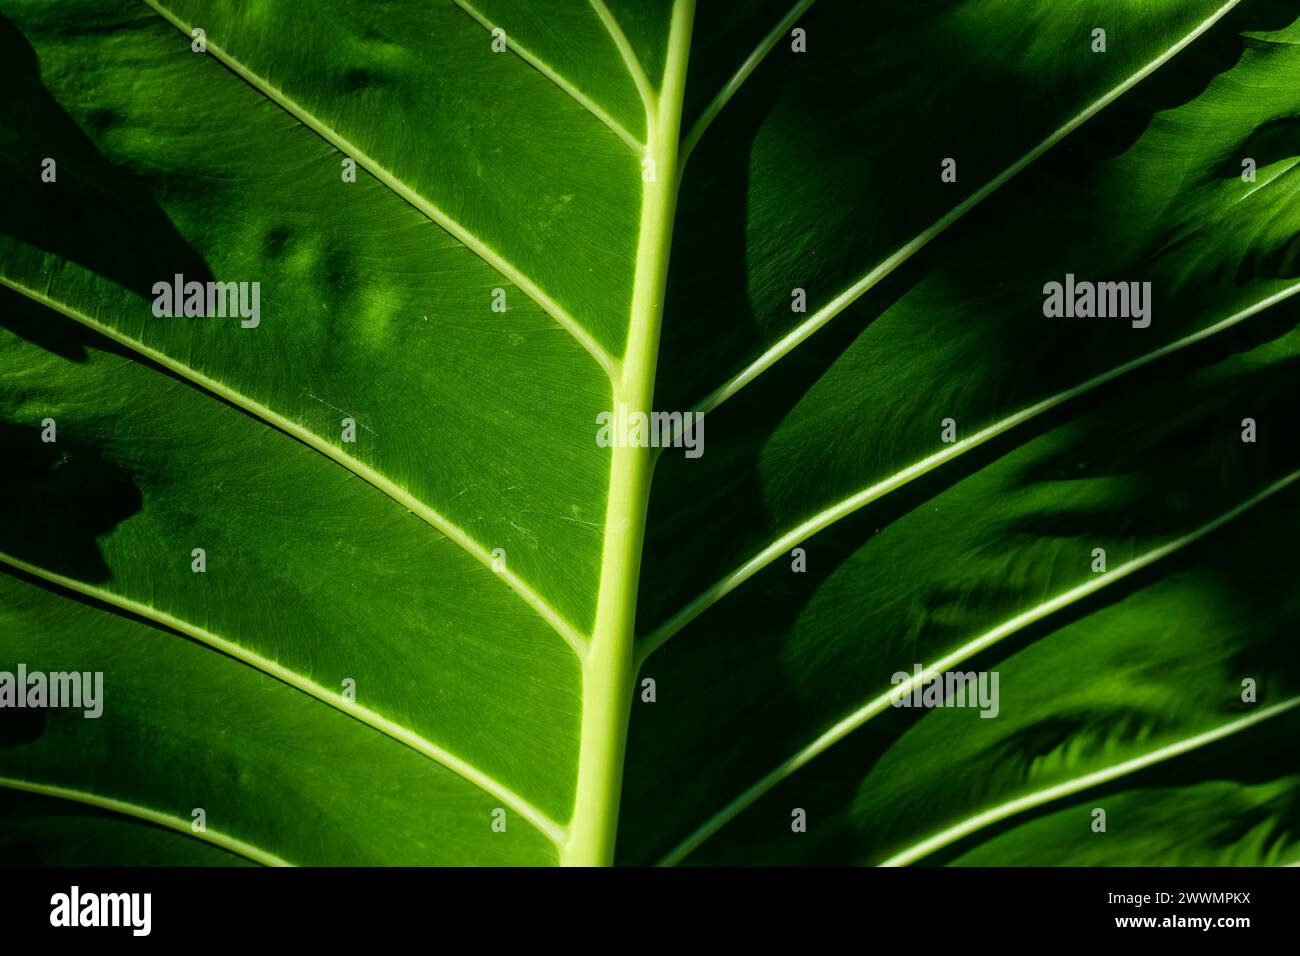 L'Alocasia Macrorrhiza è una delle più grandi Alocasia, conosciuta anche come le foglie di Taro gigante e Borneo gigante è una pianta imponente. Il taro gigante l'ha fatto Foto Stock